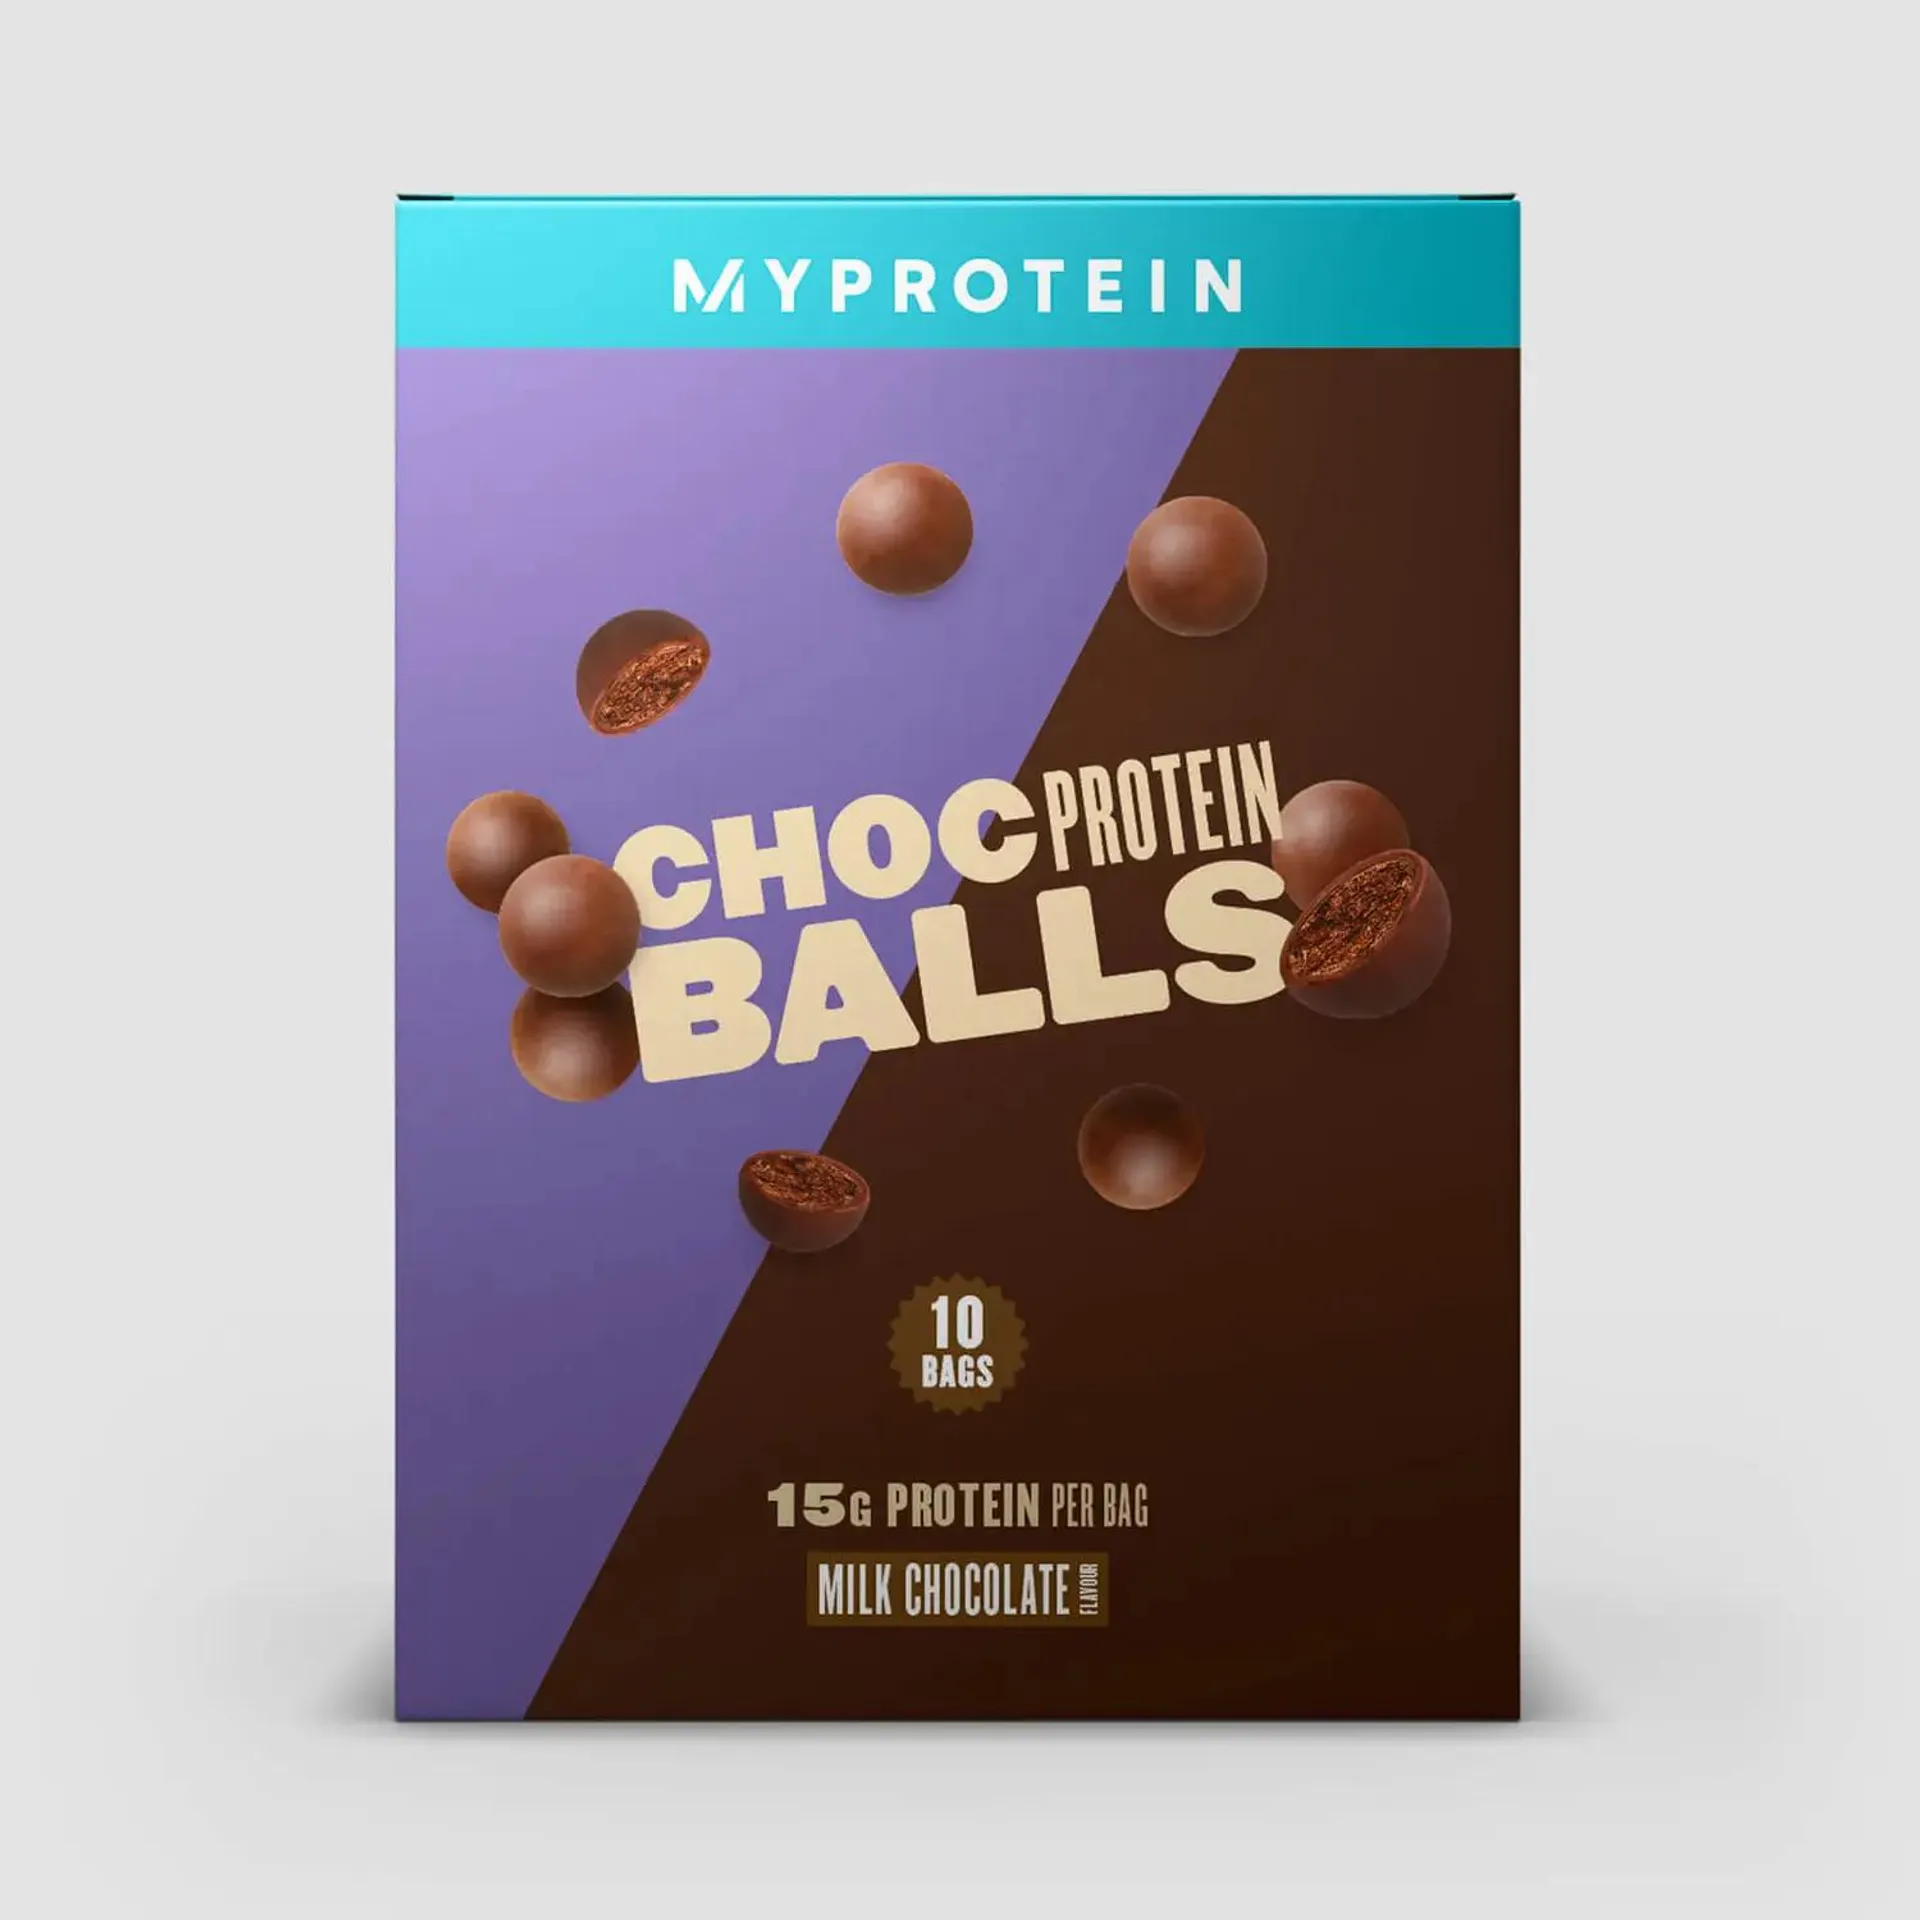 Choc Protein Balls